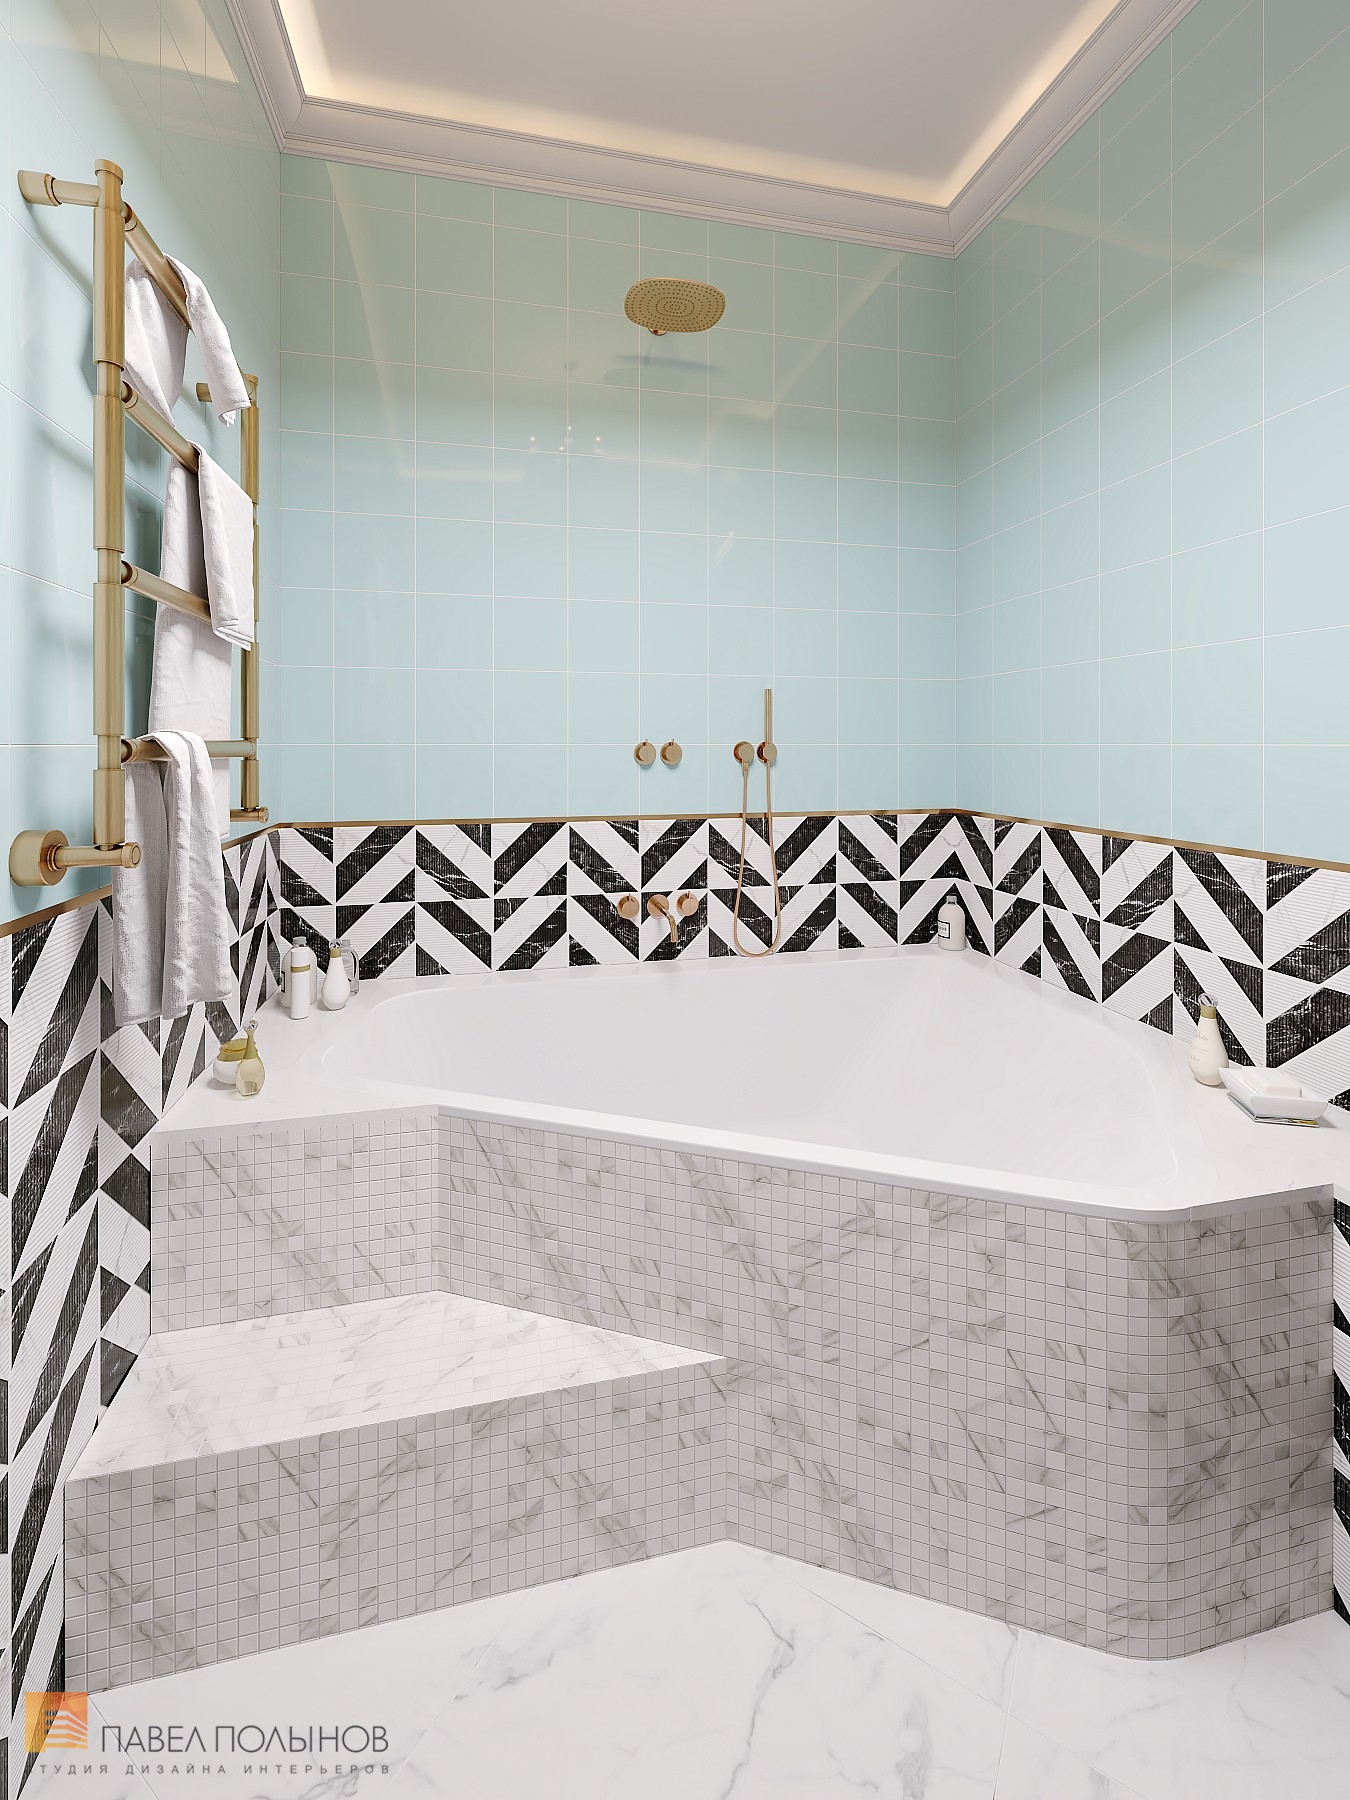 Фото дизайн интерьера ванной комнаты из проекта «Дизайн квартиры в ЖК «Три ветра», неоклассика, 88 кв.м.»